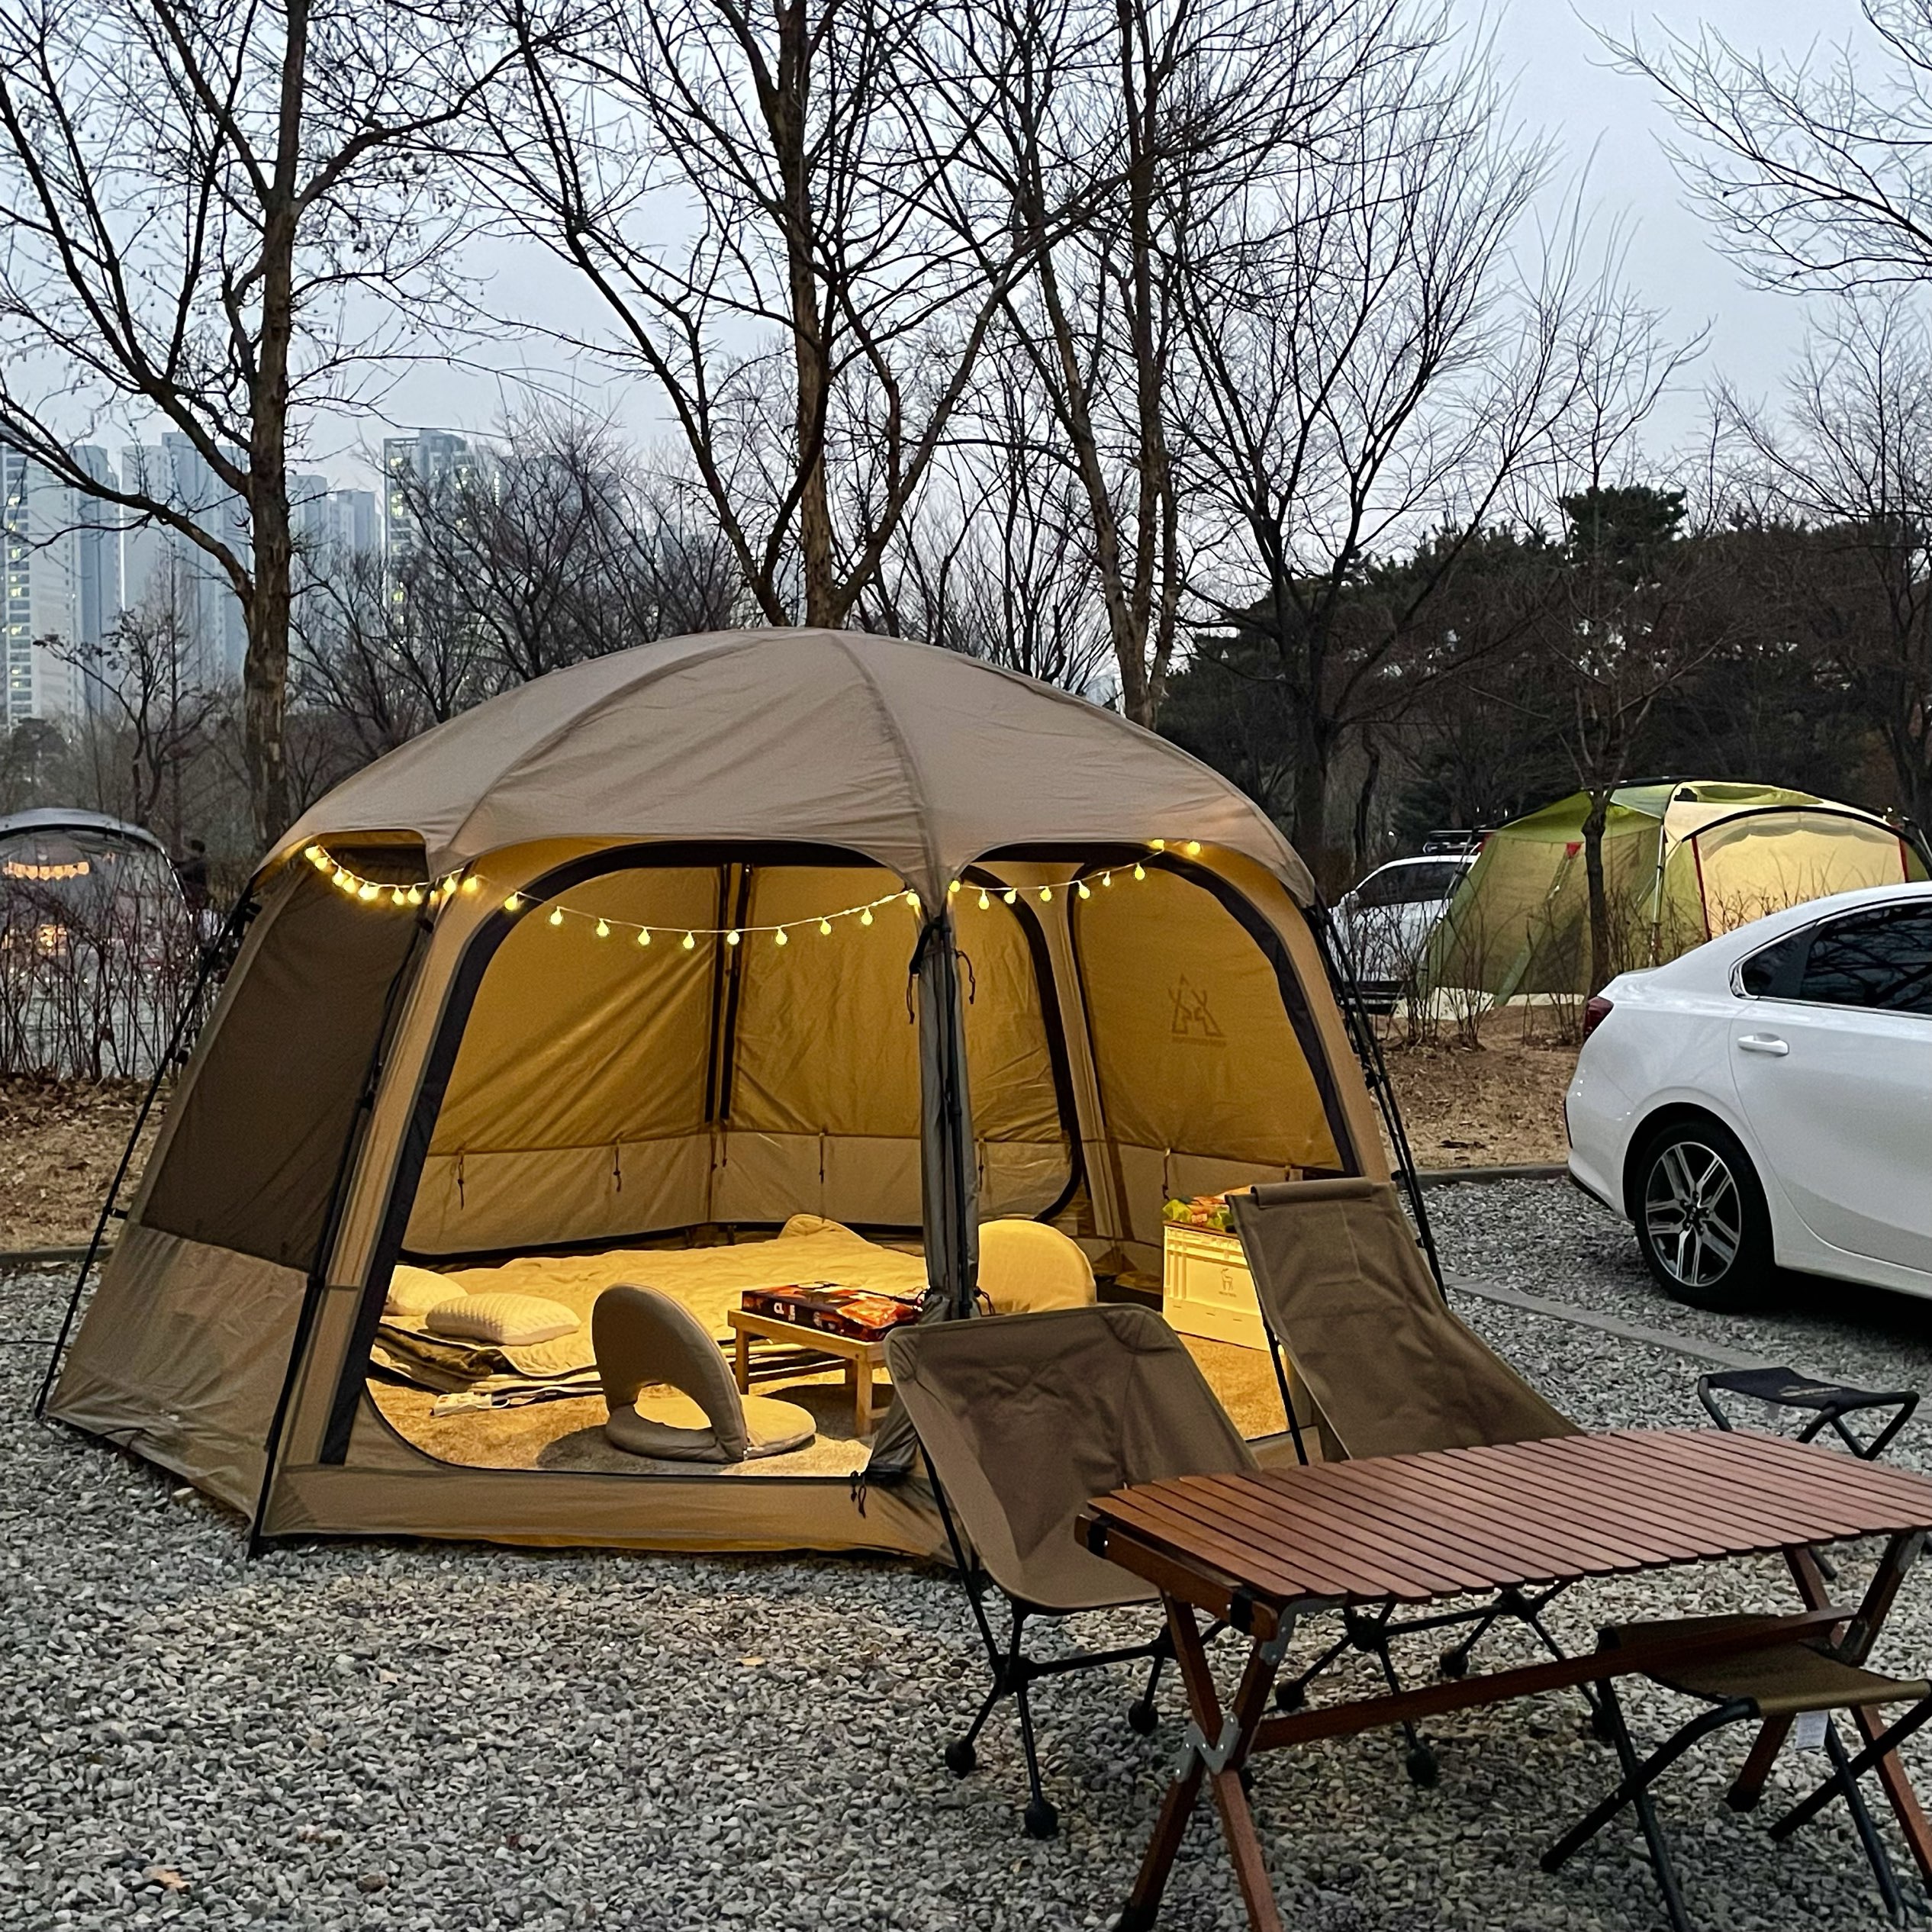 华朗游乐园自动野营场:“卡兹米比巴多姆”第一帐篷开始!